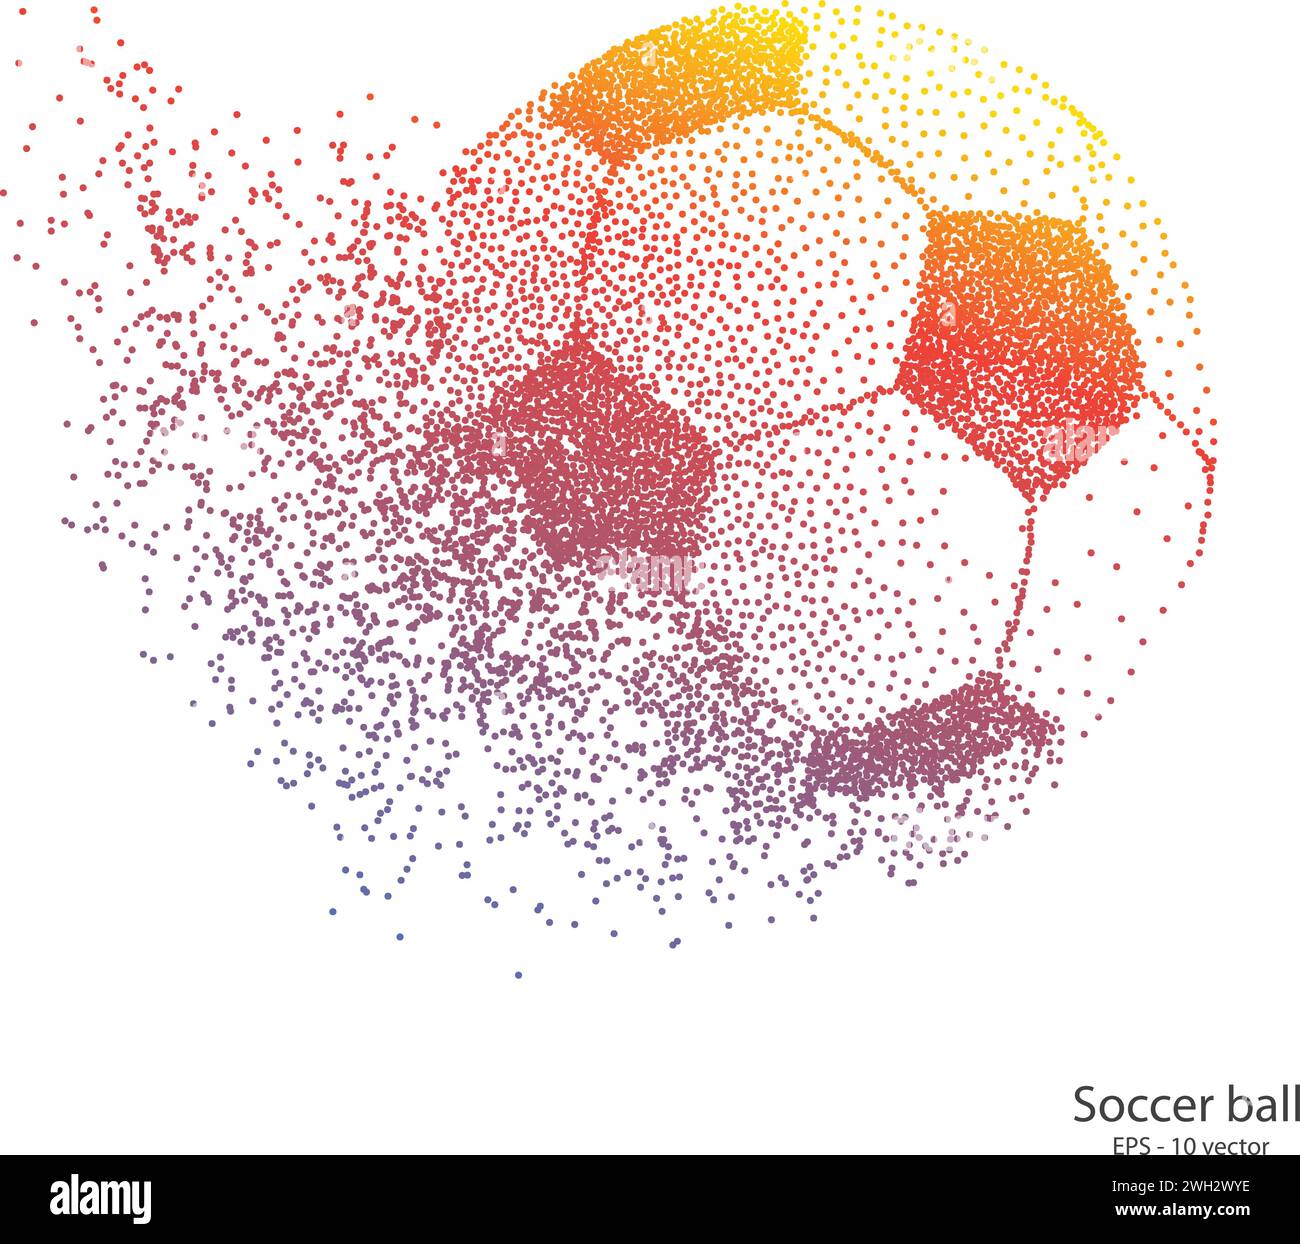 Dots Fußball .Explosive Fußball. Vektorsport-Illustration des fliegenden Fussballs. Stock Vektor